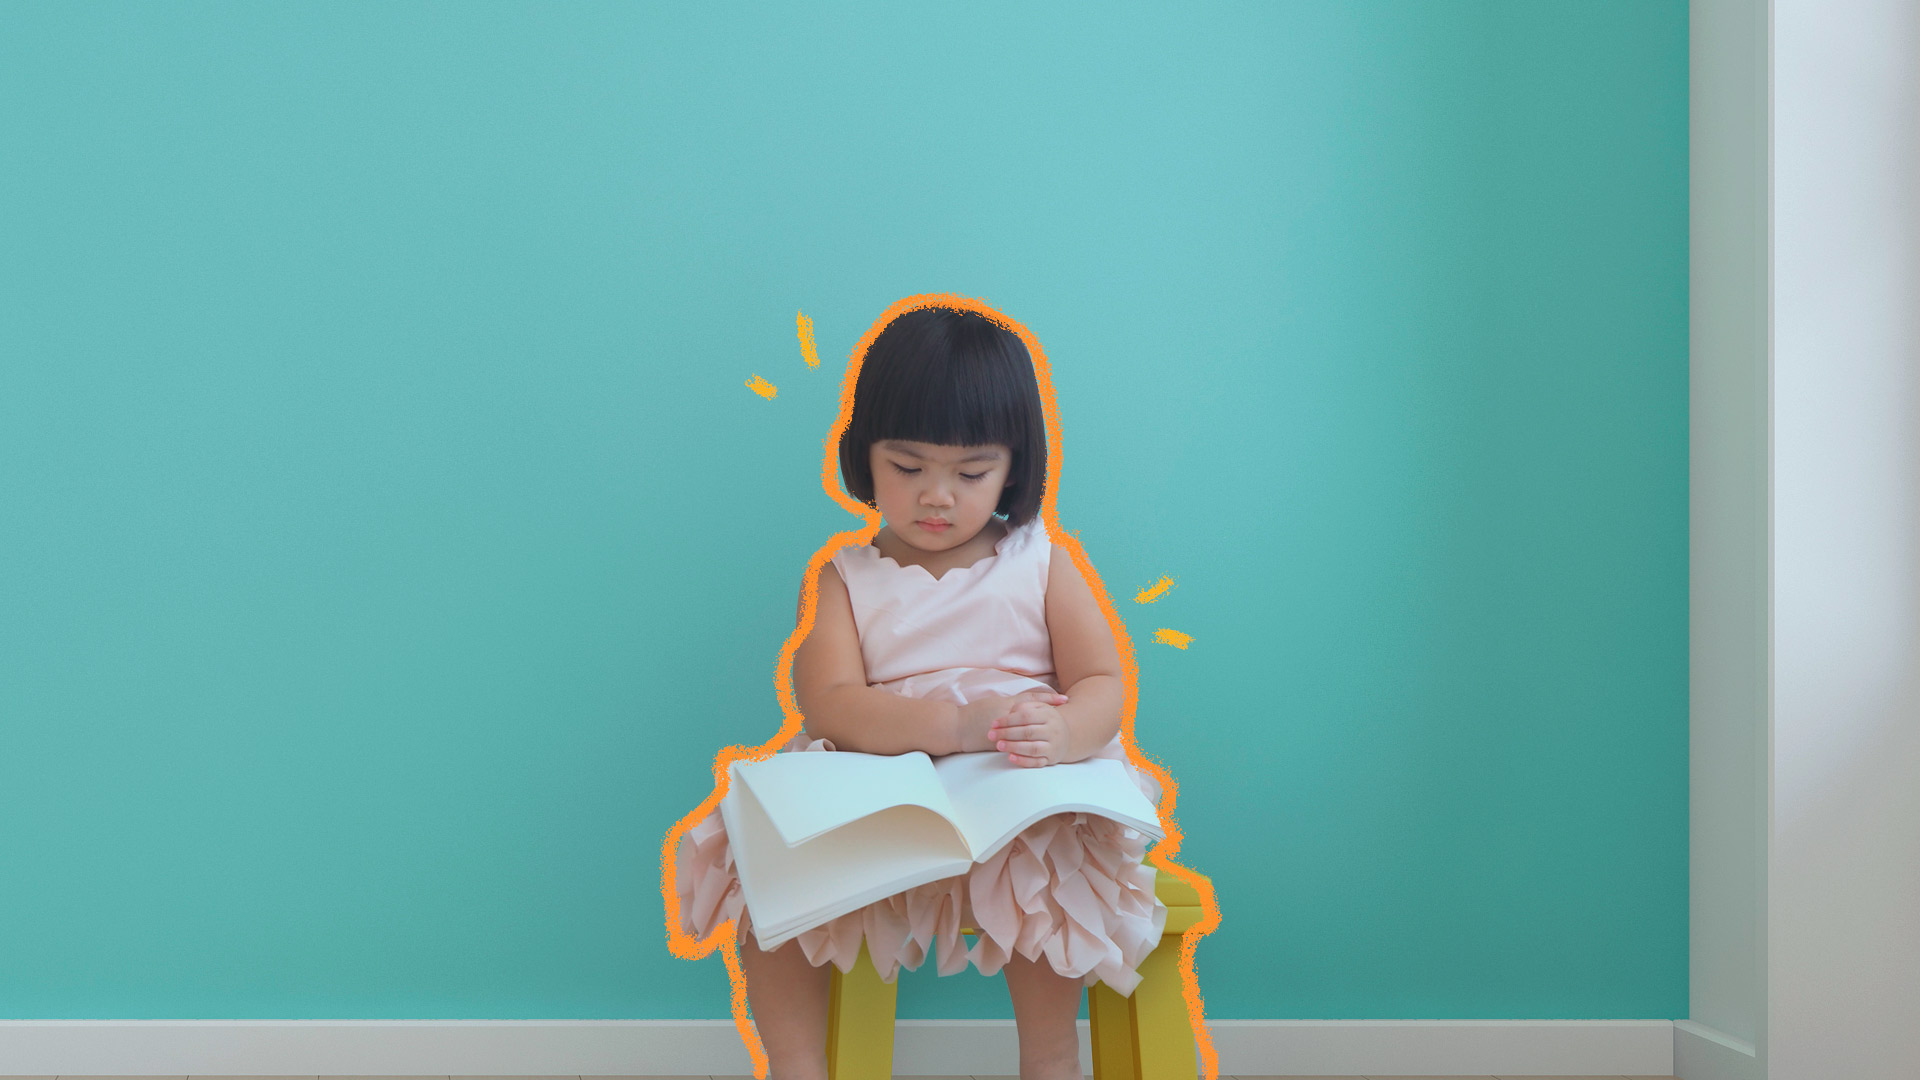 Saúde mental e emocional: uma menina com traços orientais está sentada num banquinho amarelo de costas para uma parede azul turquesa e ela olha para um caderno de folhas em branco